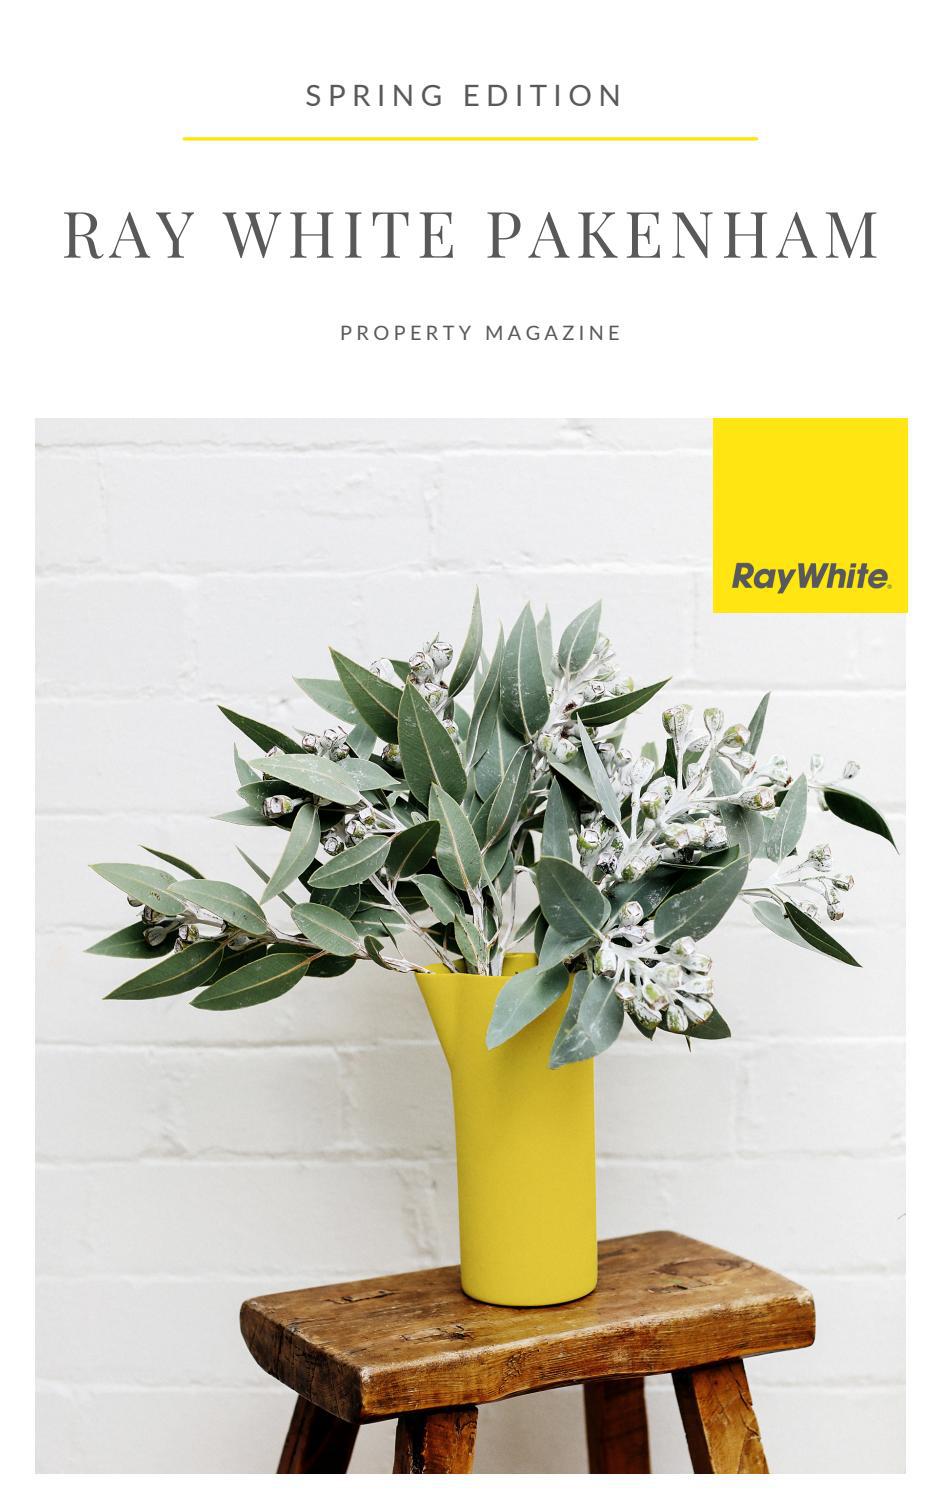 Ray White Pakenham Property Magazine, Spring Edition